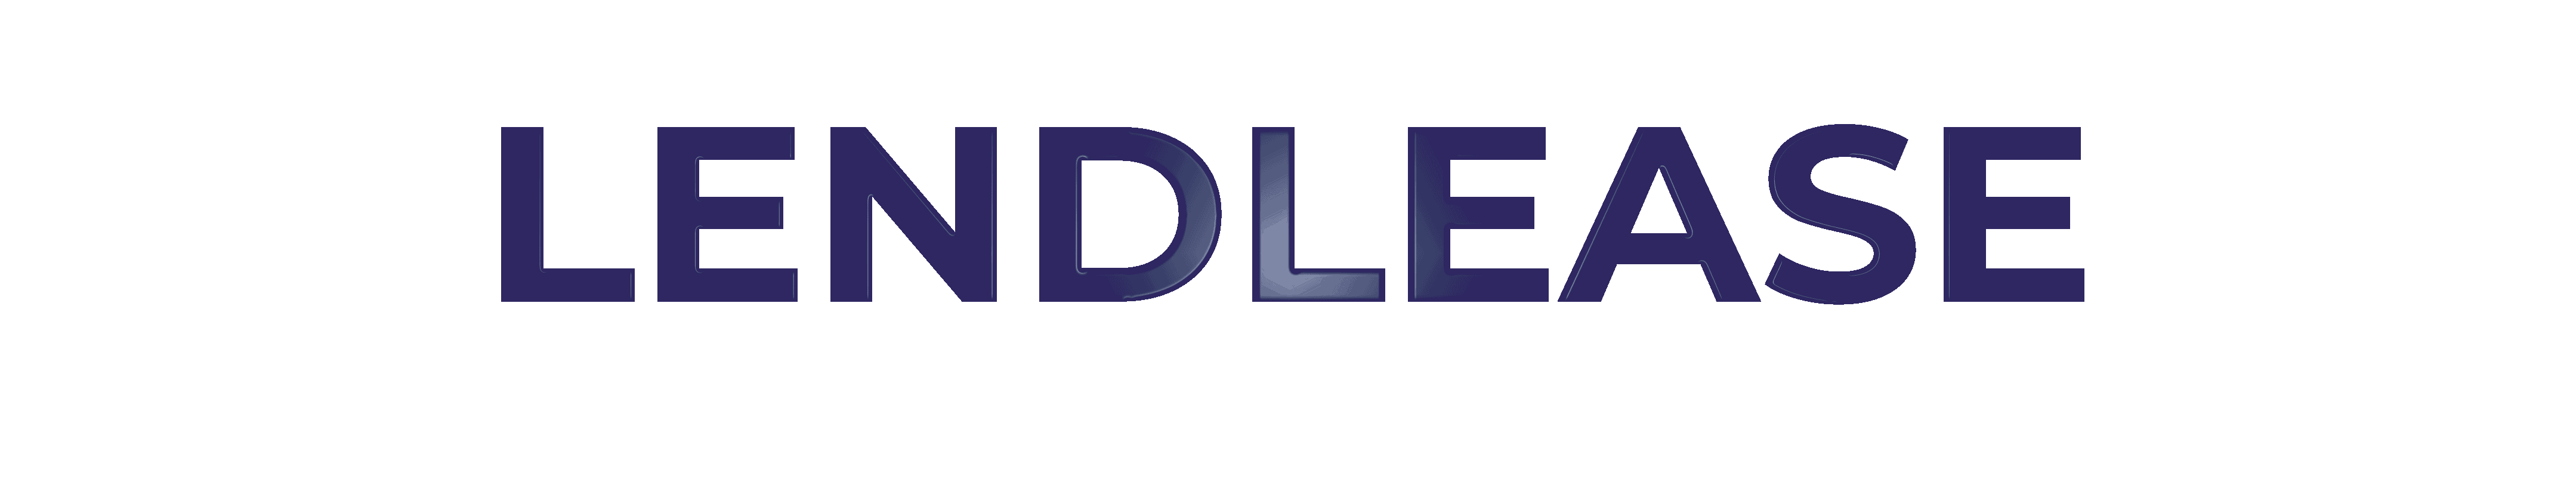 Lendlease-Client